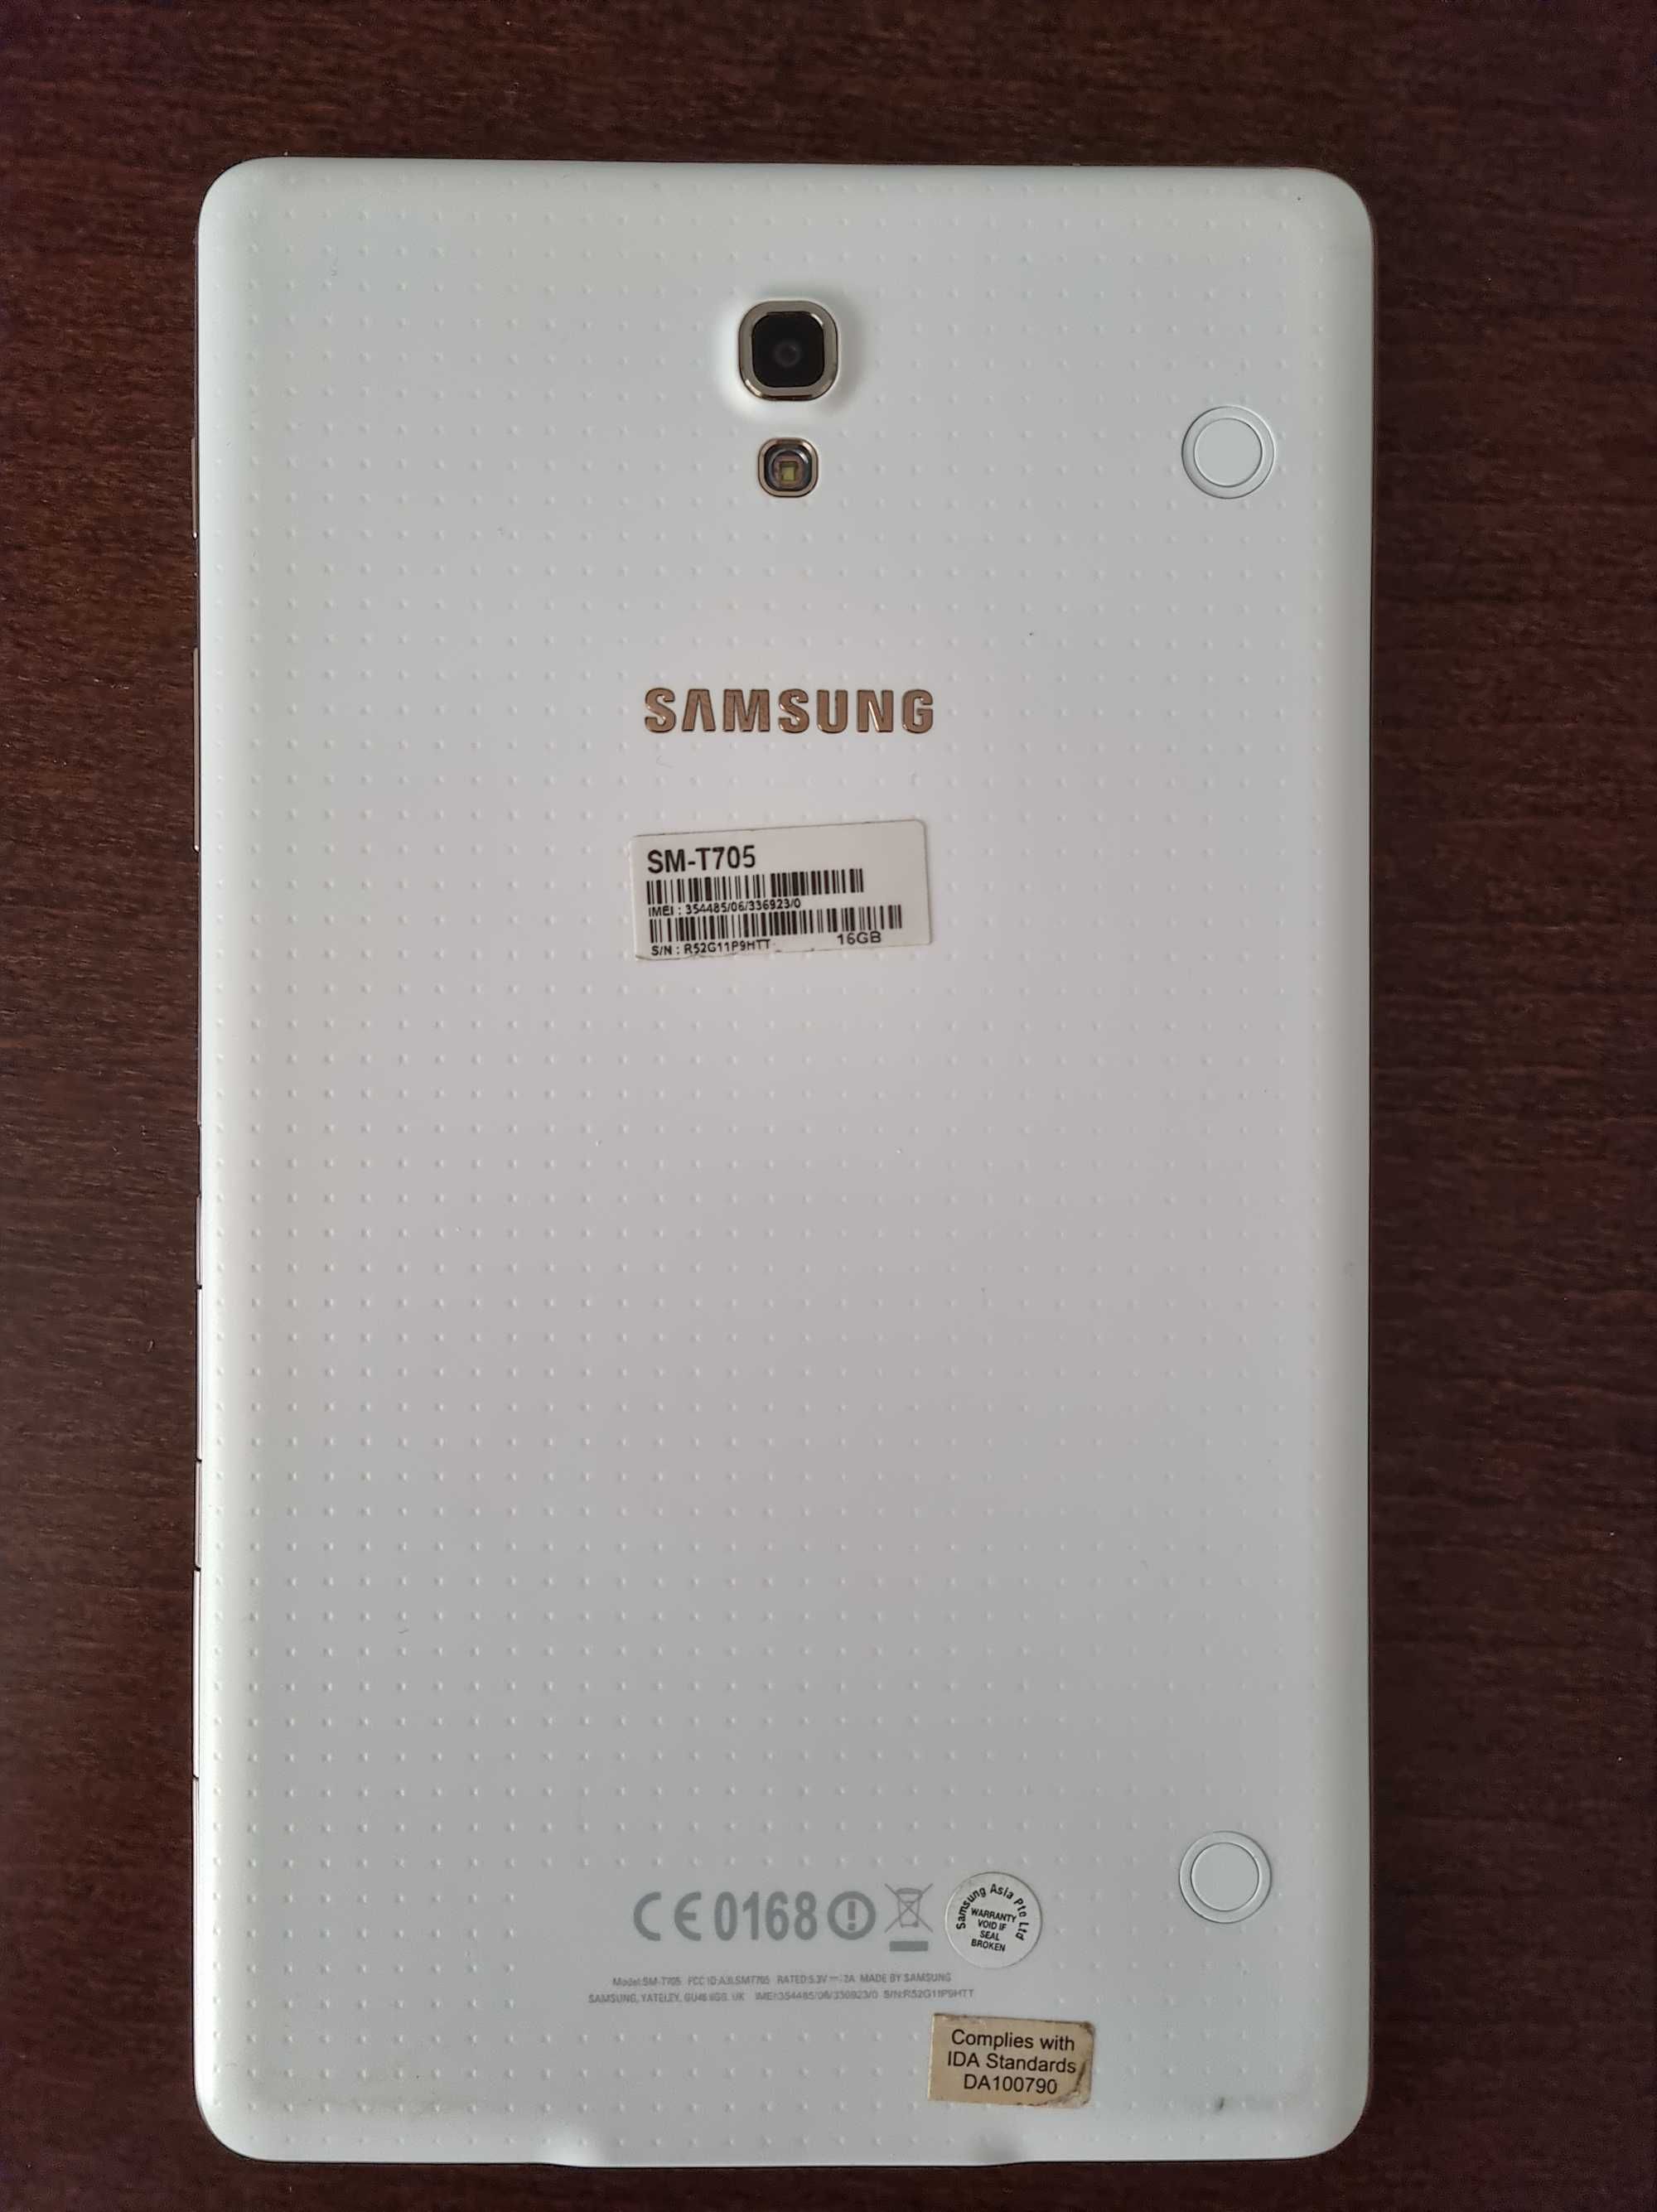 Samsung Galaxy Tab S SM-T705 (acumulator nou) + Case